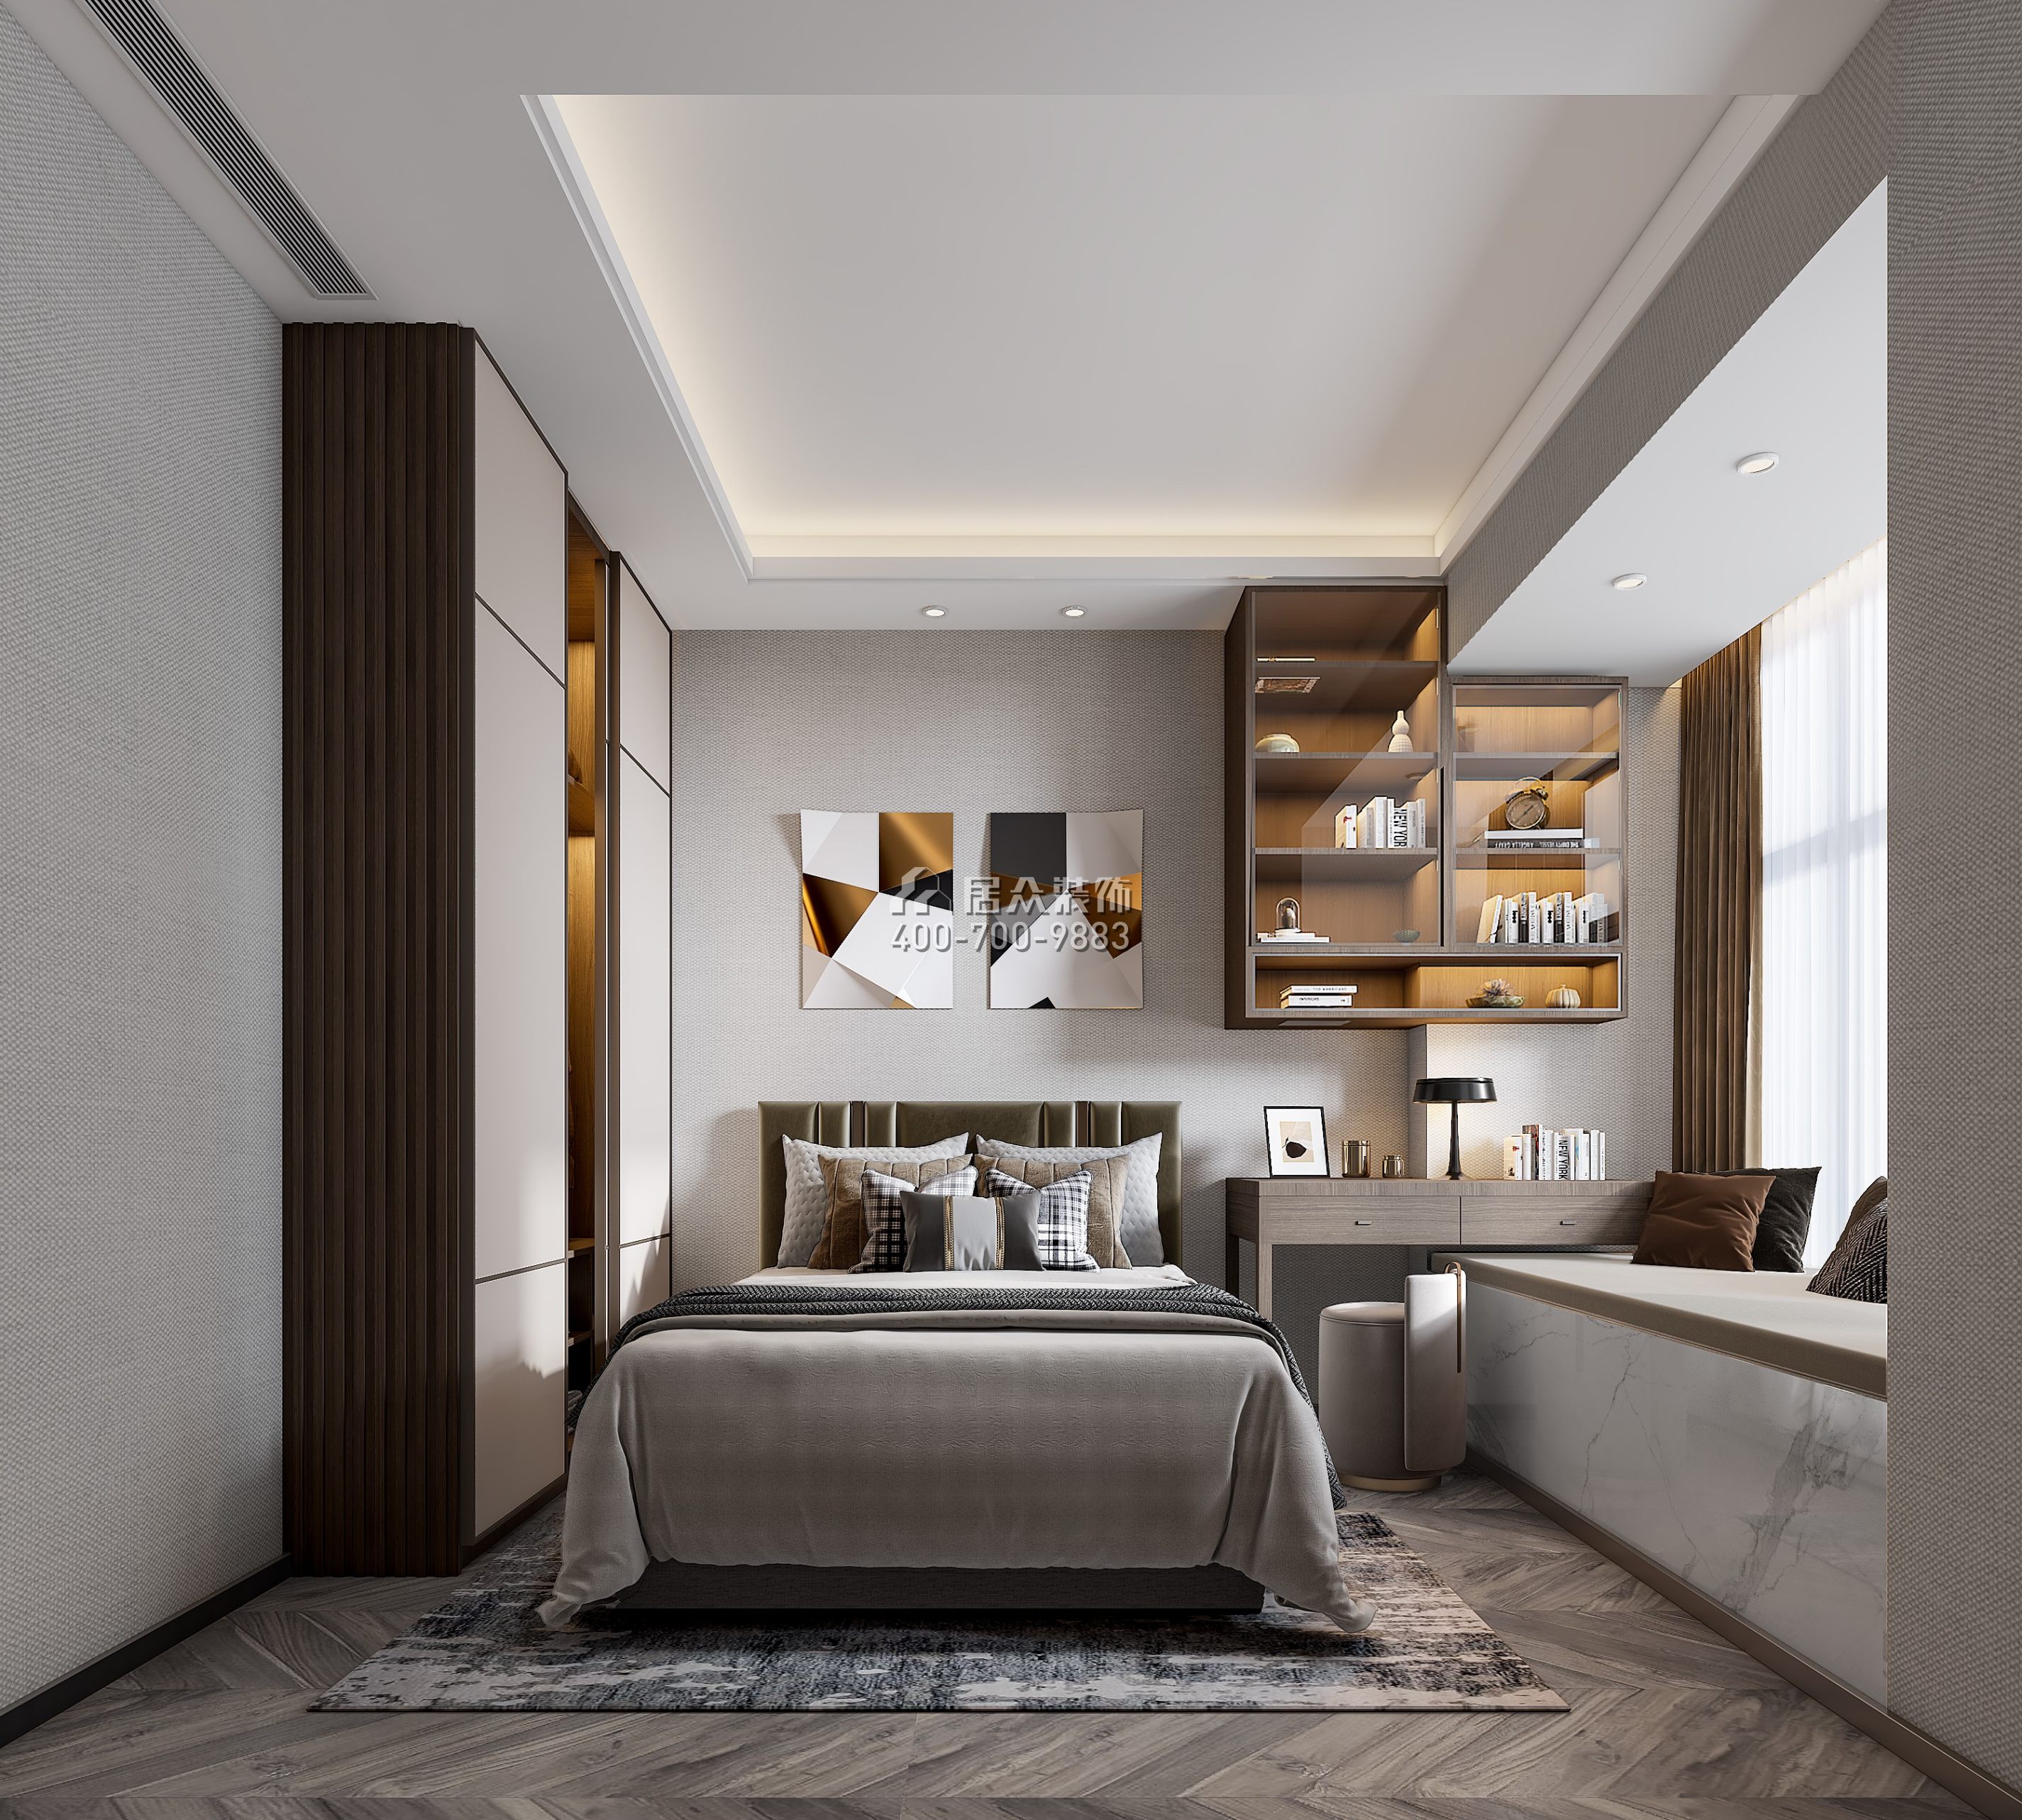 天鹅堡三期122平方米现代简约风格平层户型卧室装修效果图